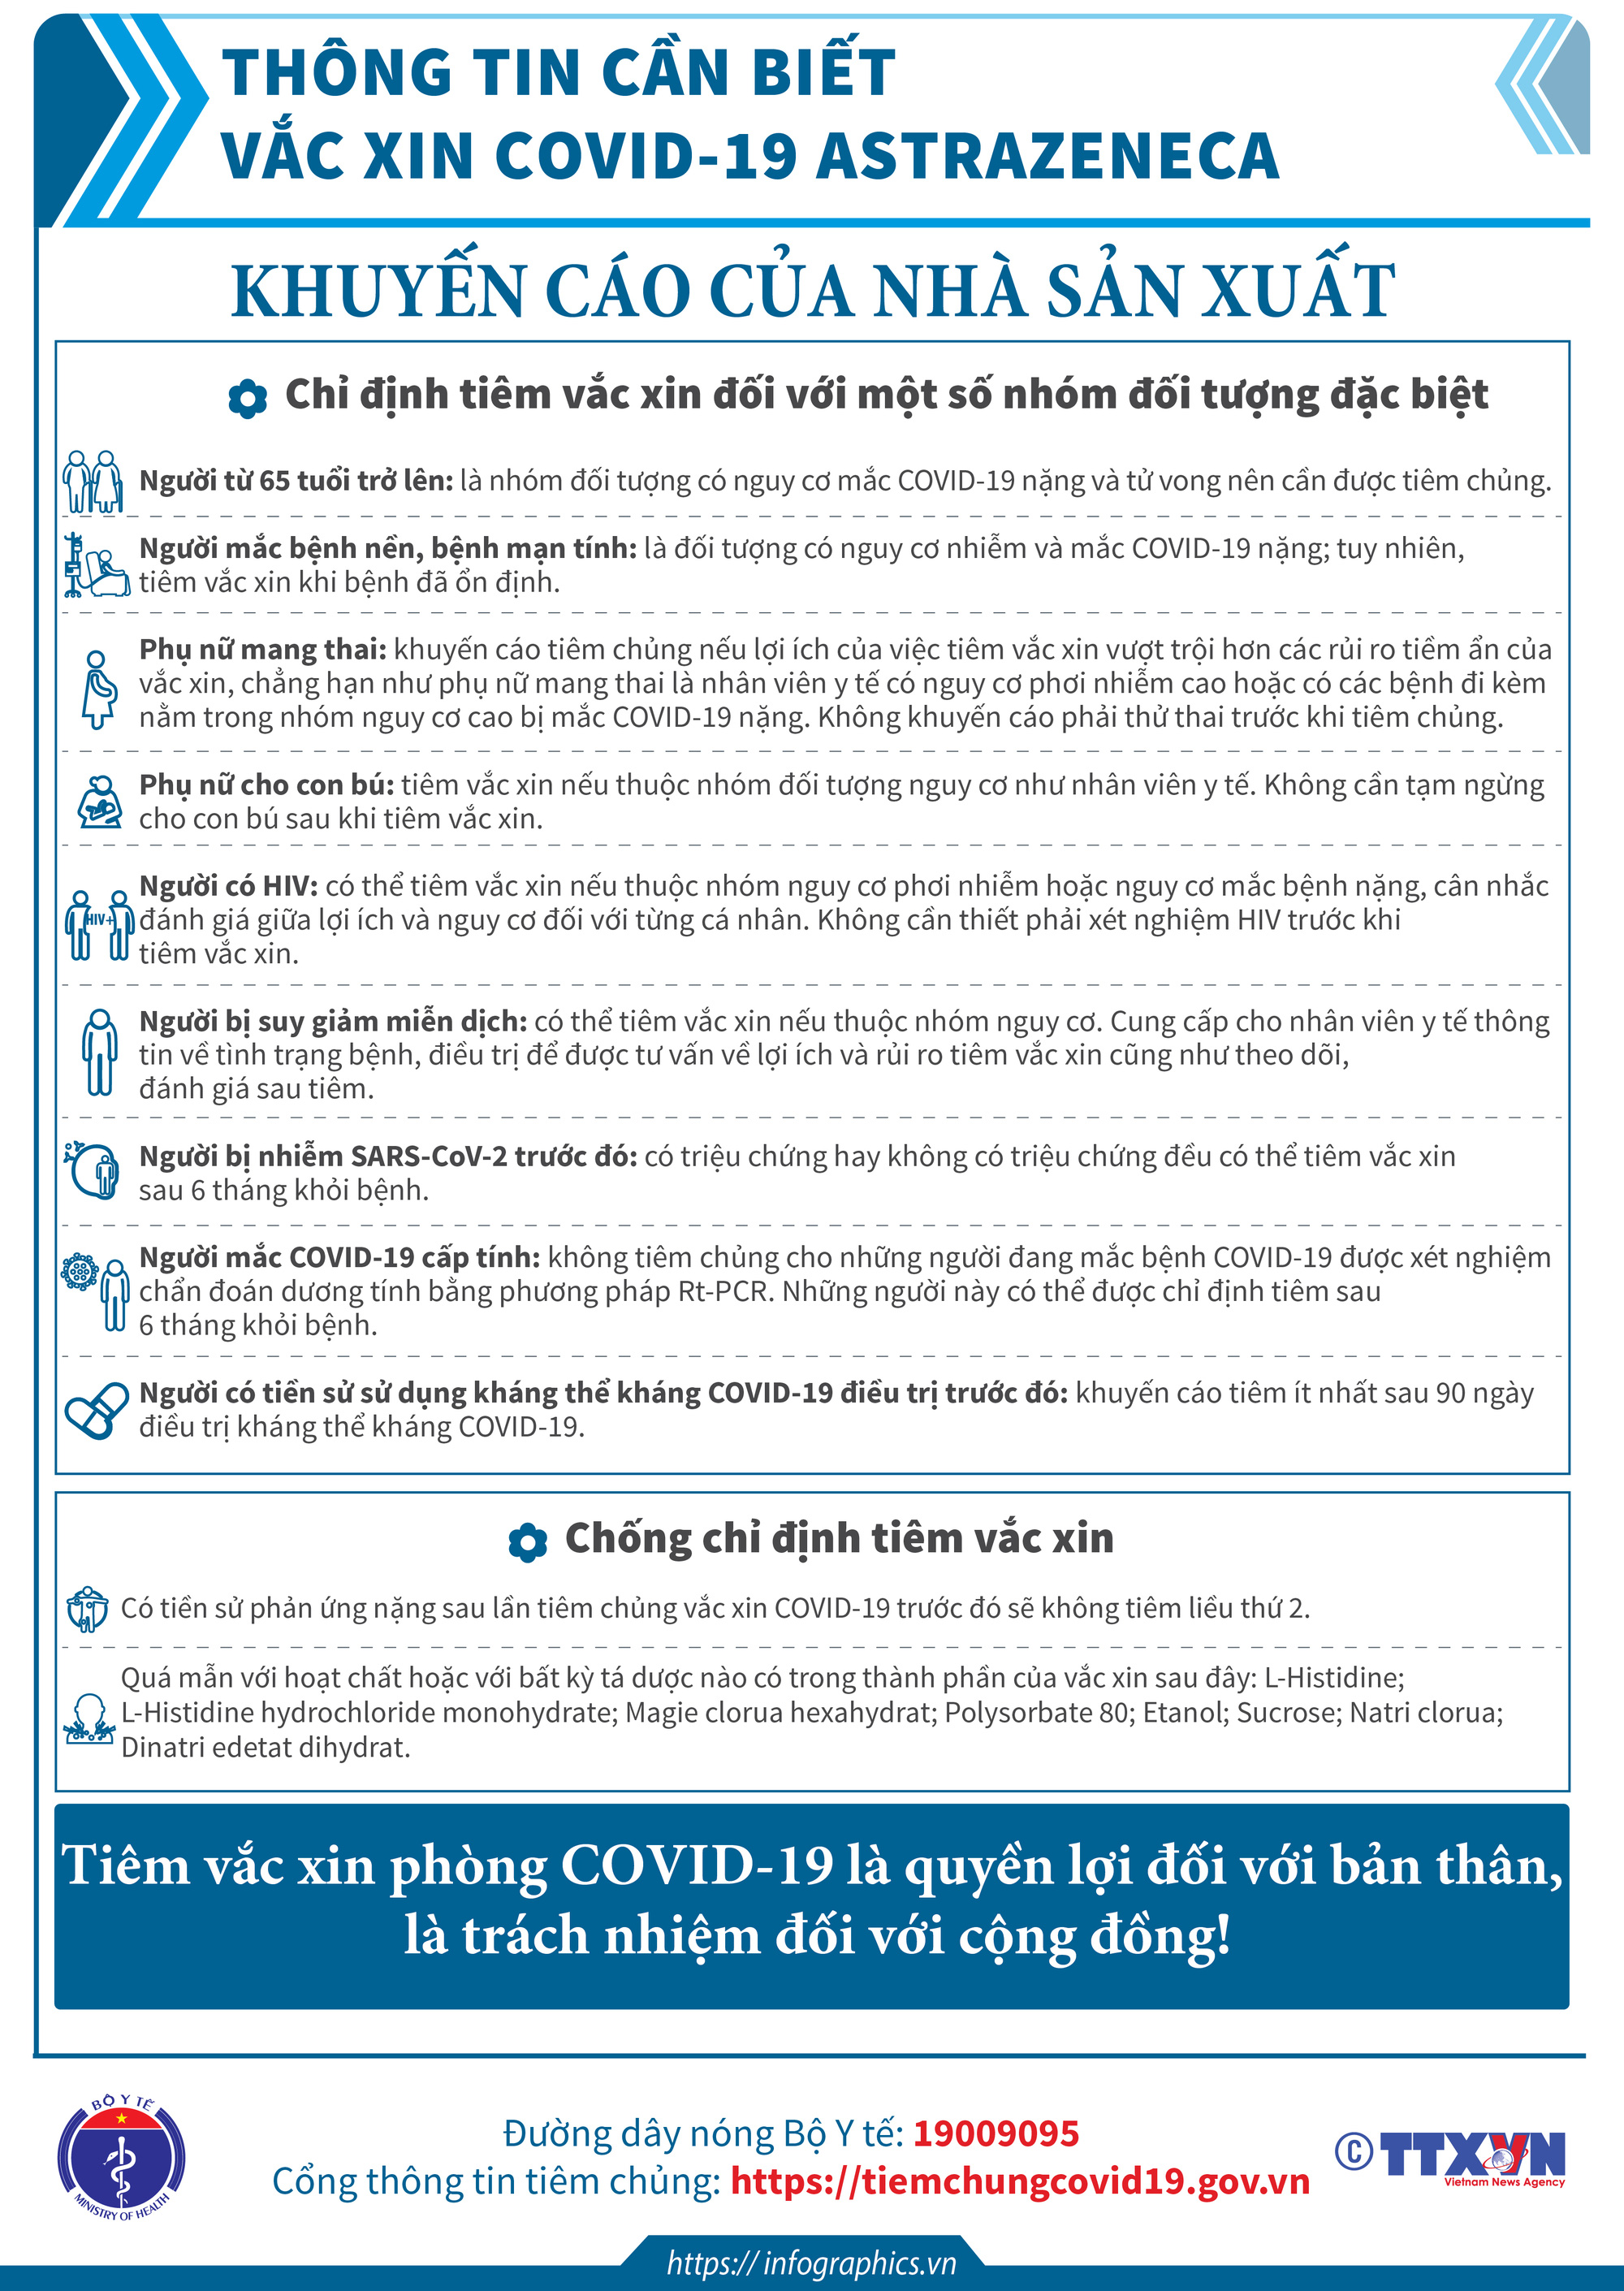 Thông tin cần biết về một số vaccine COVID-19 đang triển khai tiêm chủng tại Việt Nam. - Ảnh 2.